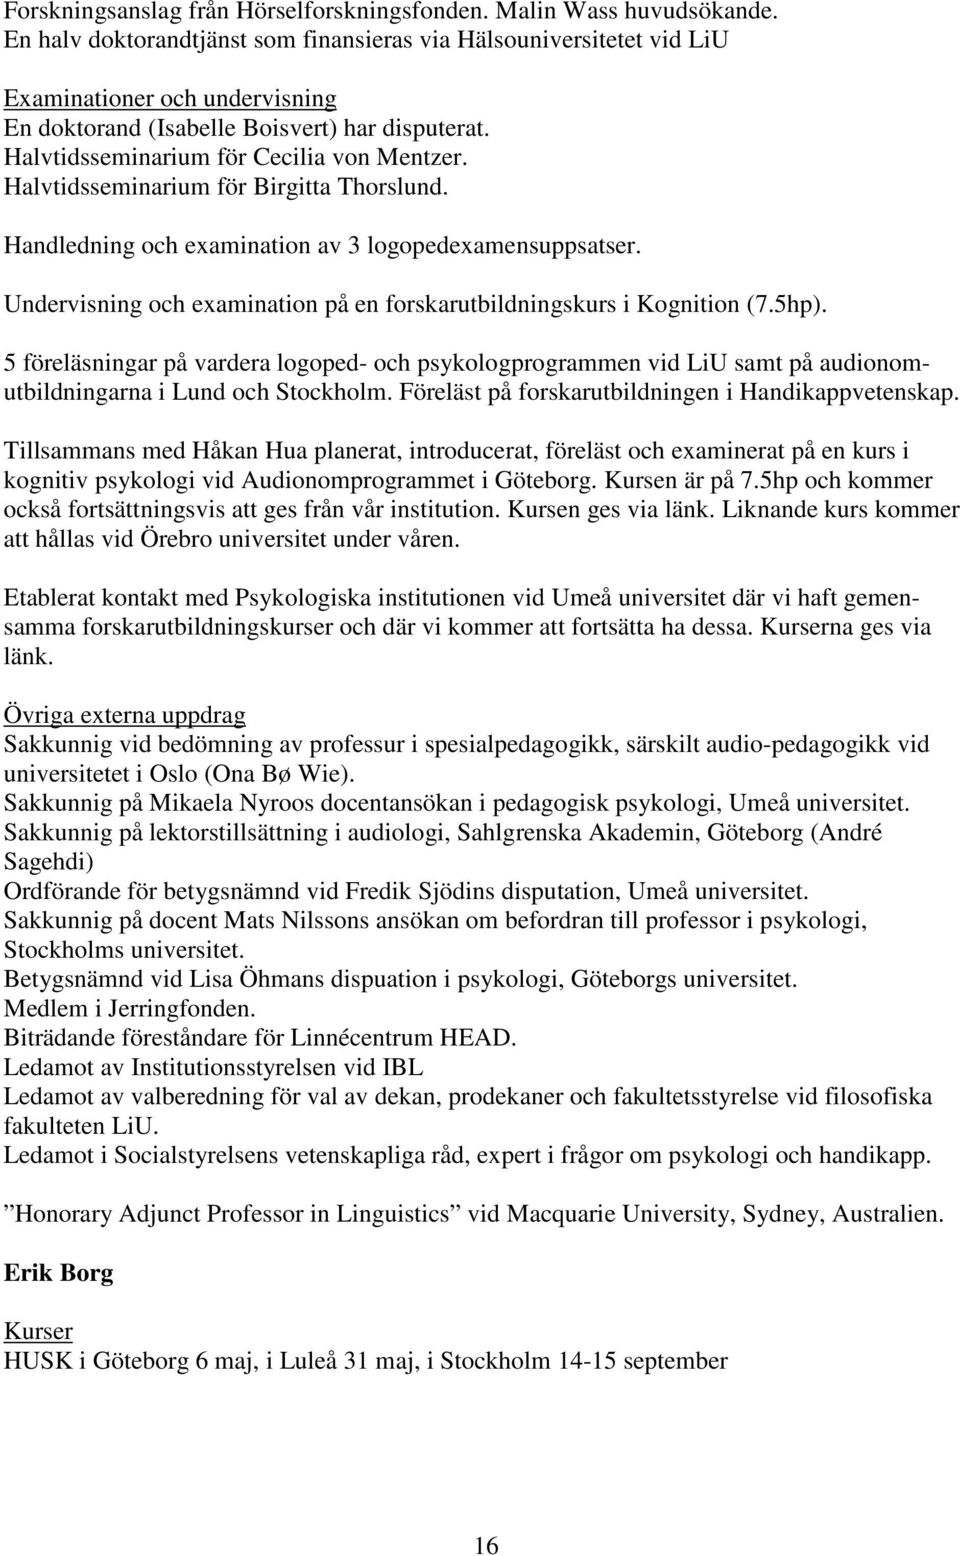 Halvtidsseminarium för Birgitta Thorslund. Handledning och examination av 3 logopedexamensuppsatser. Undervisning och examination på en forskarutbildningskurs i Kognition (7.5hp).